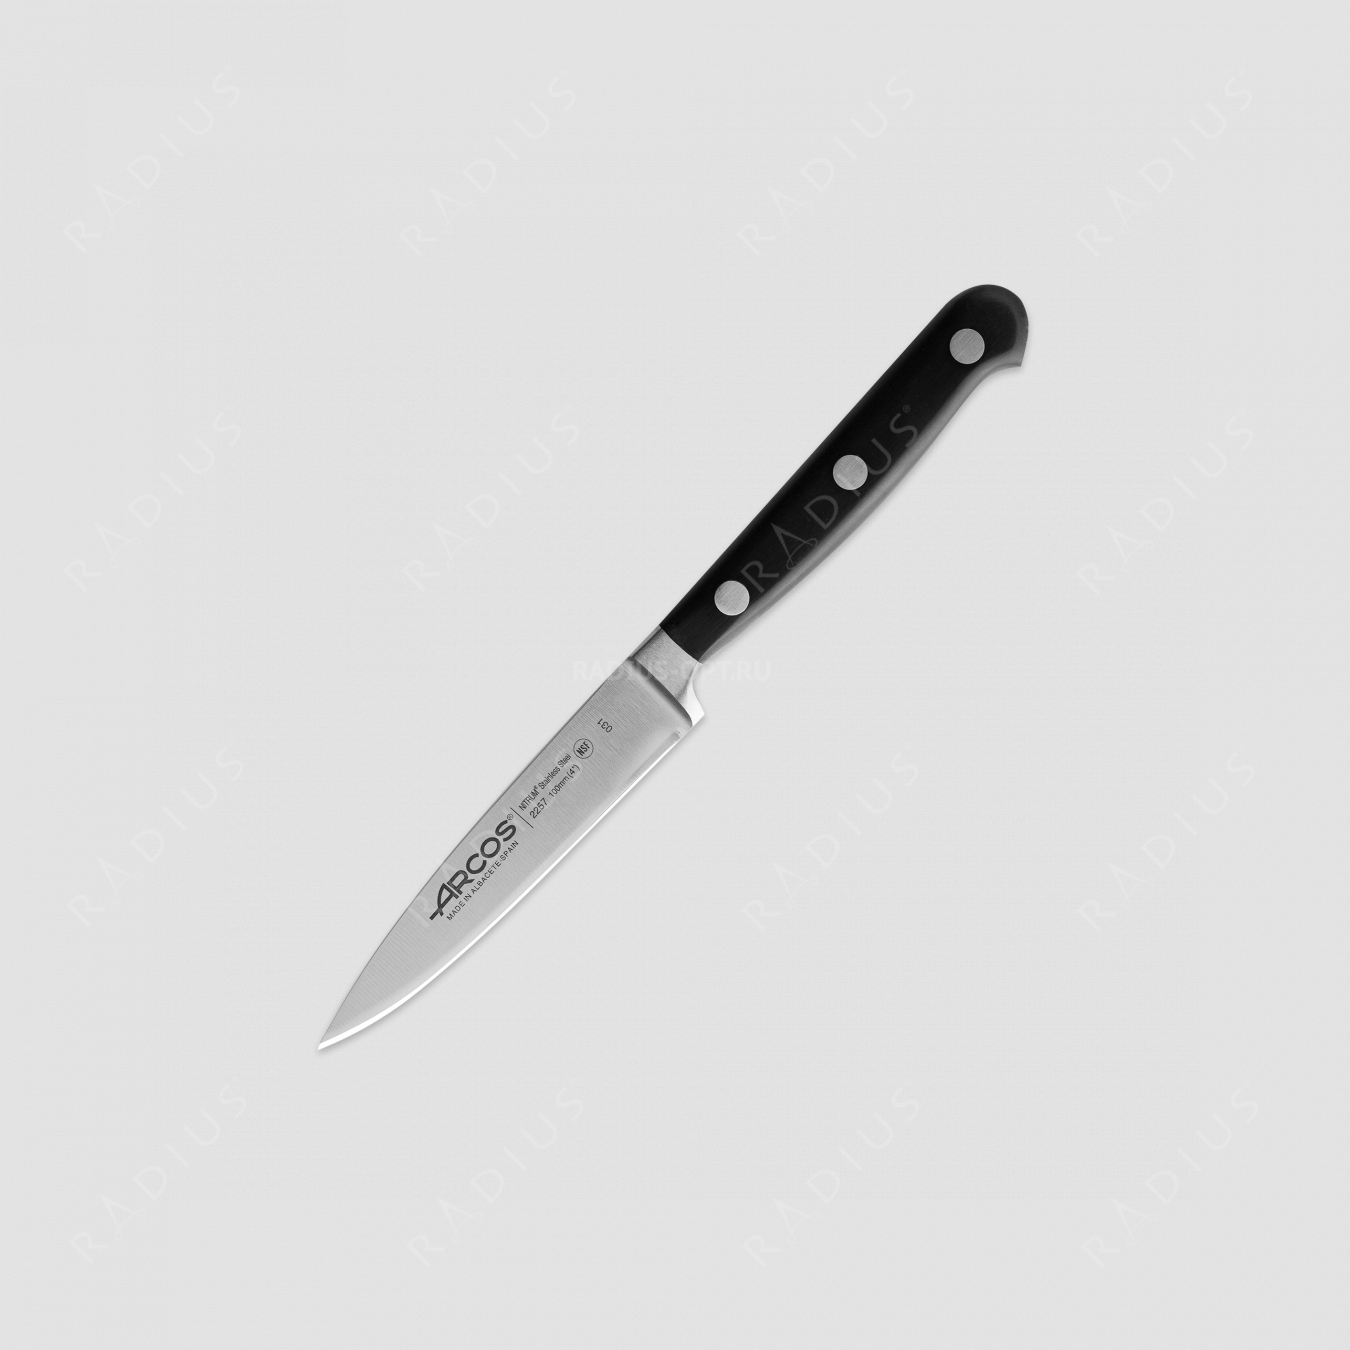 Нож кухонный для чистки овощей 10 см, серия Opera, ARCOS, Испания